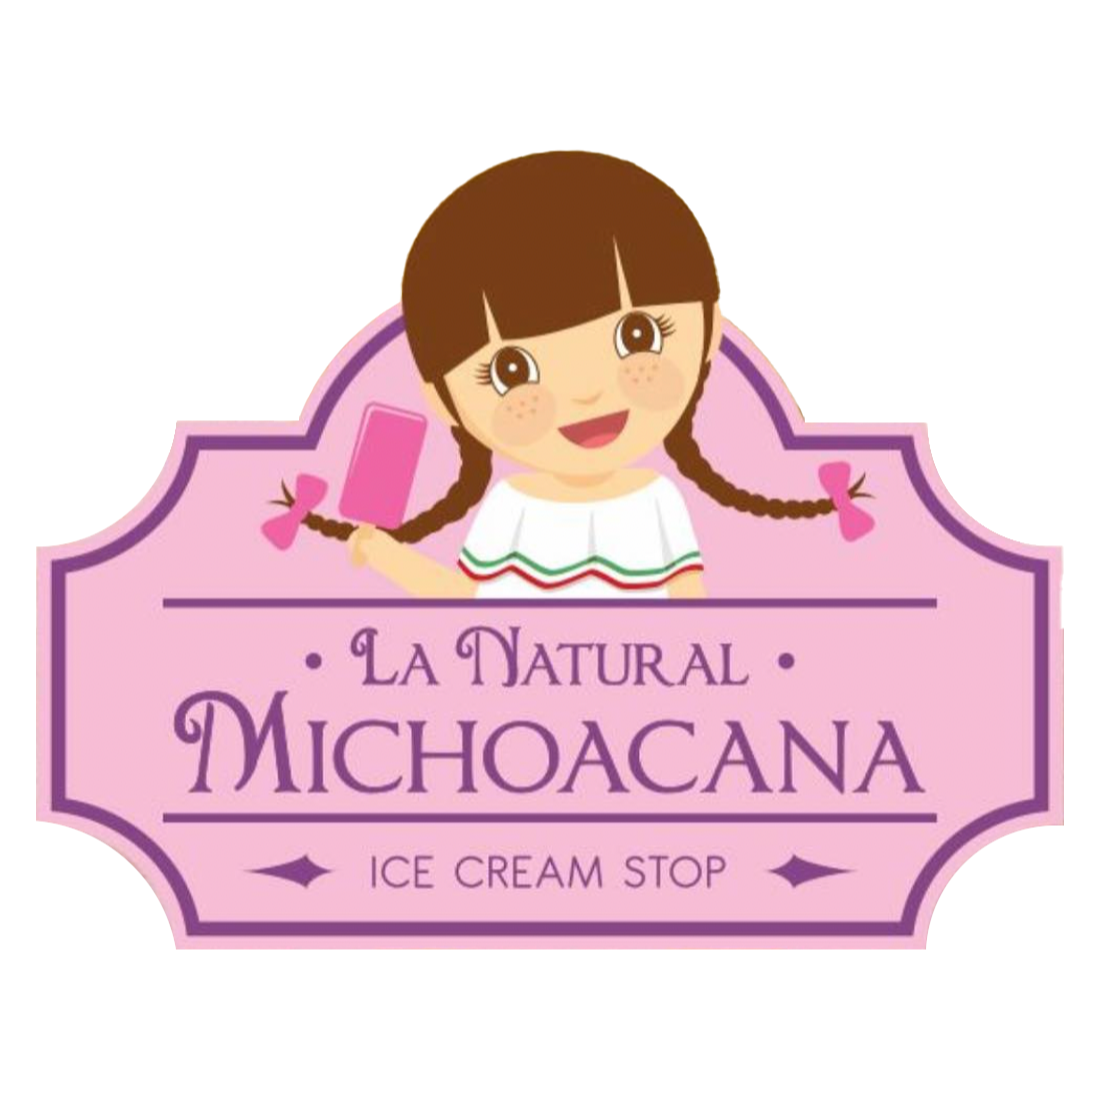 La Natural Michoacana Ice Cream Stop - Corona, CA 92881 - (888)586-2601 | ShowMeLocal.com